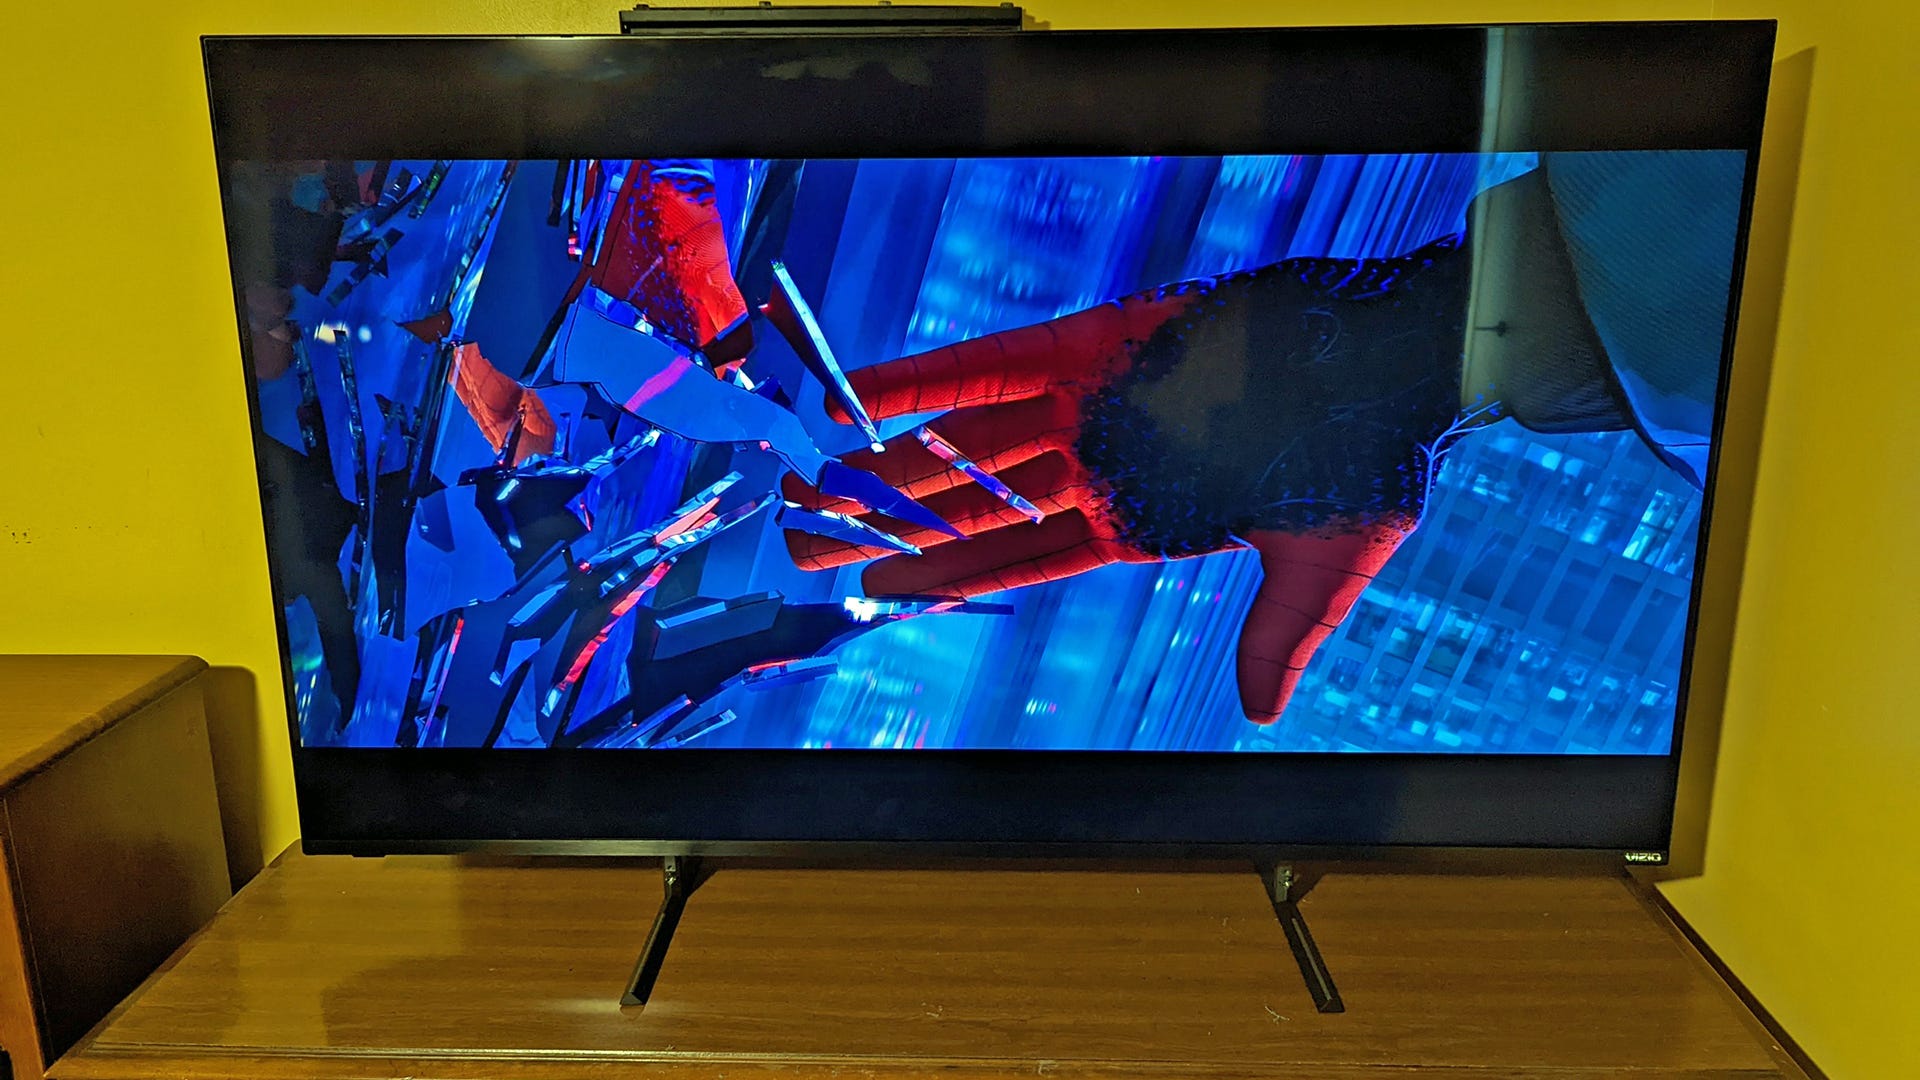 'Spider-Man' melompat dari gedung seperti yang ditampilkan di Vizio TV